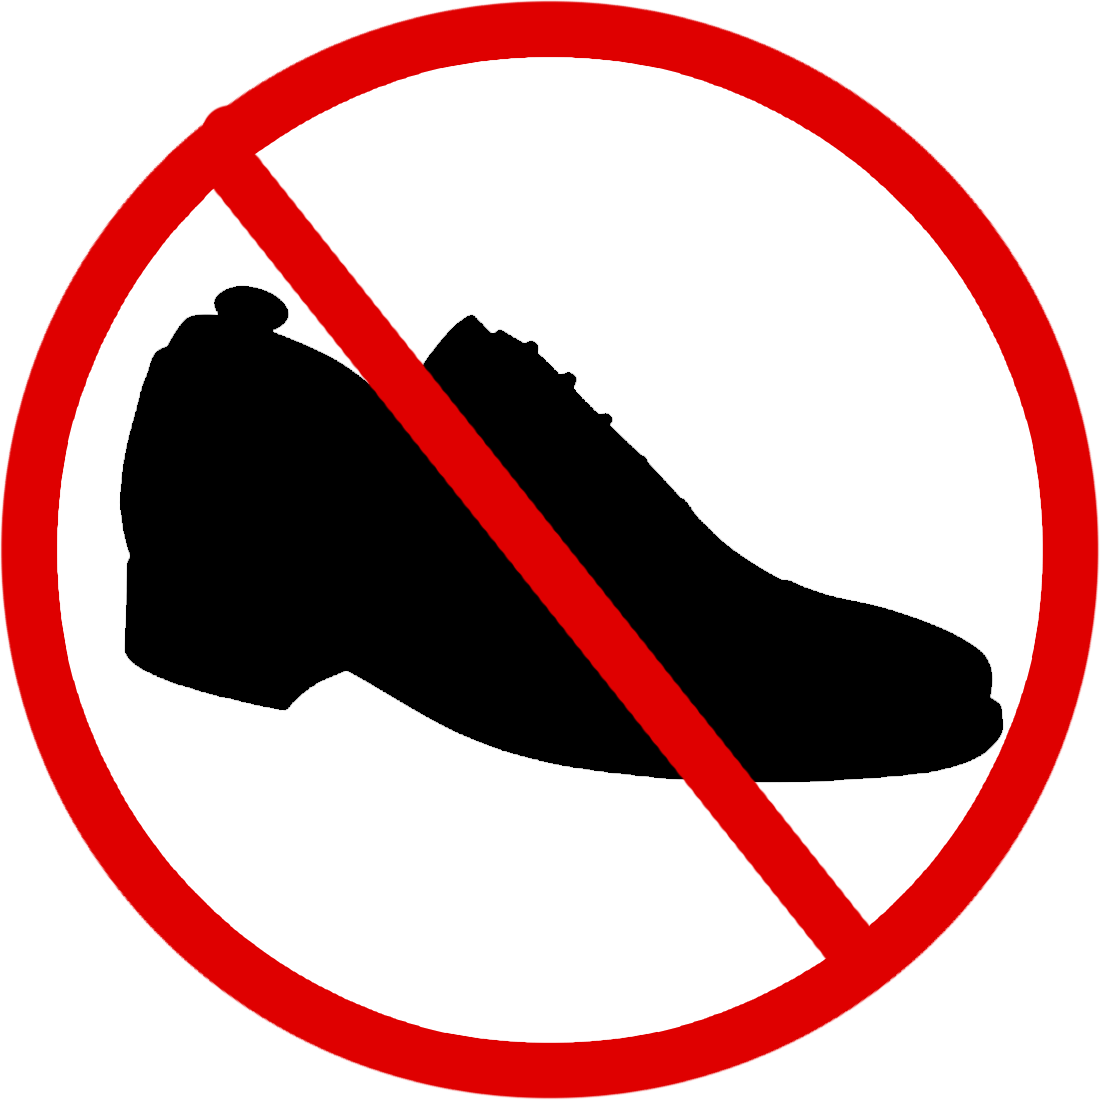 Бессменной обуви или без сменной обуви. В обуви запрещено. Сменная обувь. Знак перечеркнутая обувь. Знак без обуви.